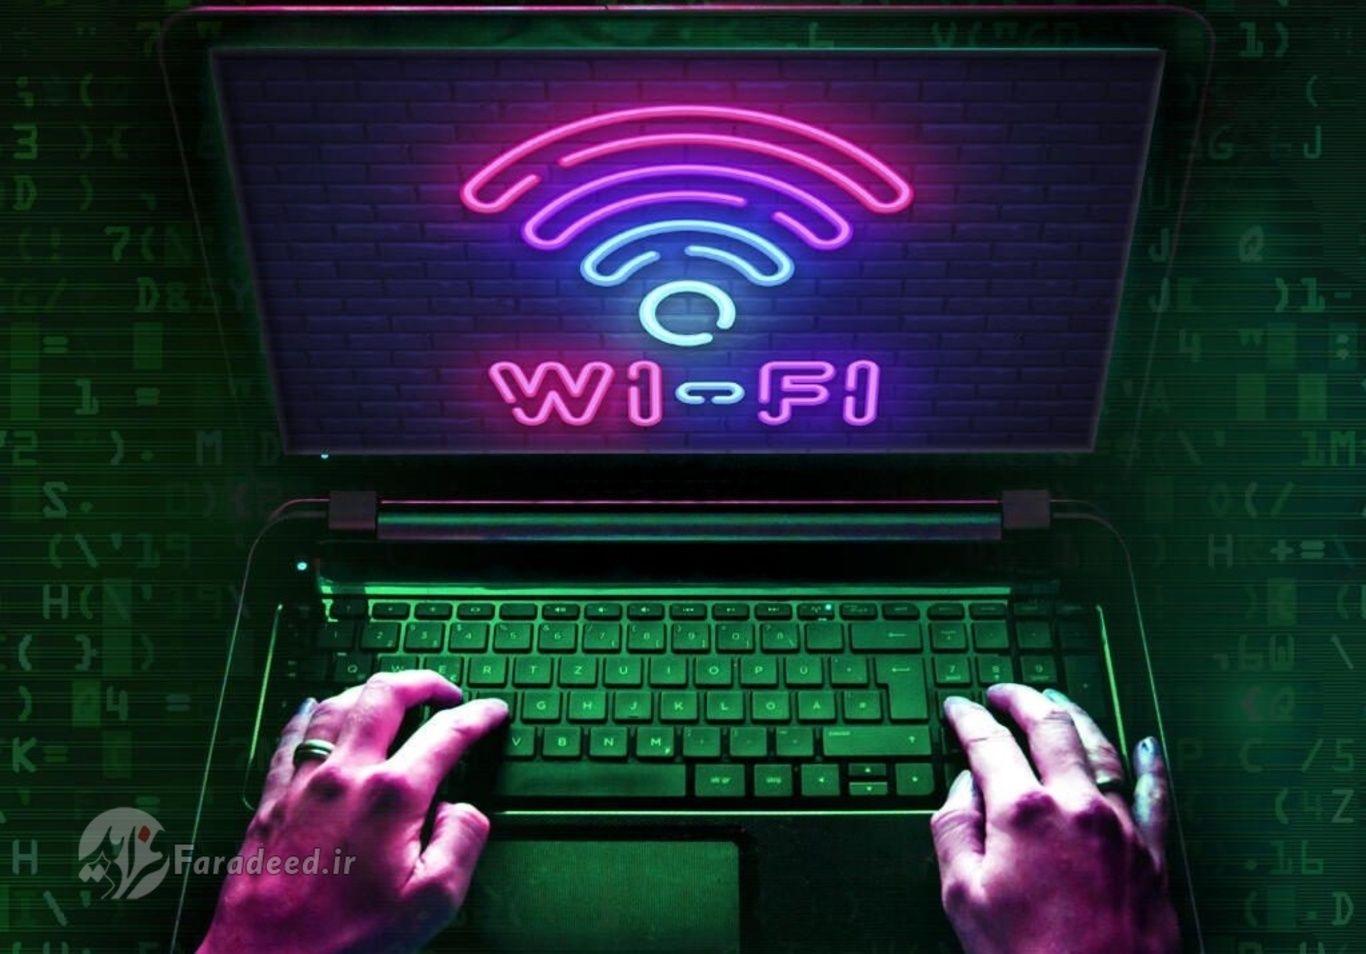 بهترین روش جلوگیری از هک وای فای (Wi-Fi) چیست؟